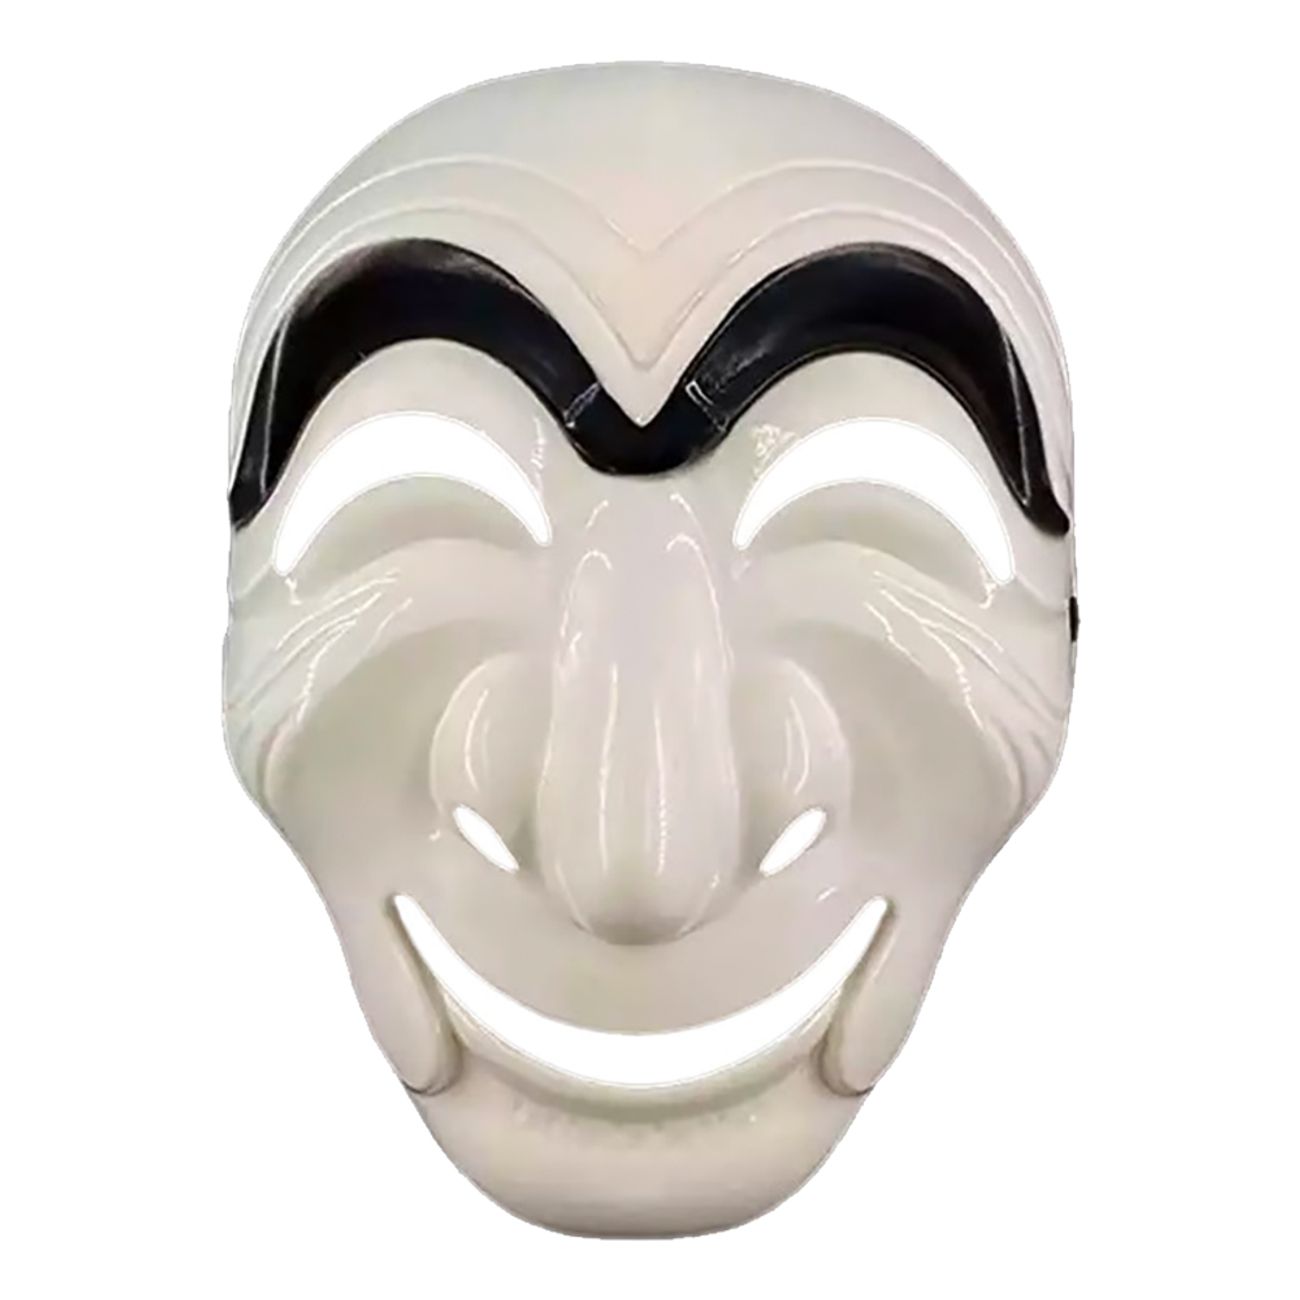 la-casa-de-papel-mask-korea-89943-1